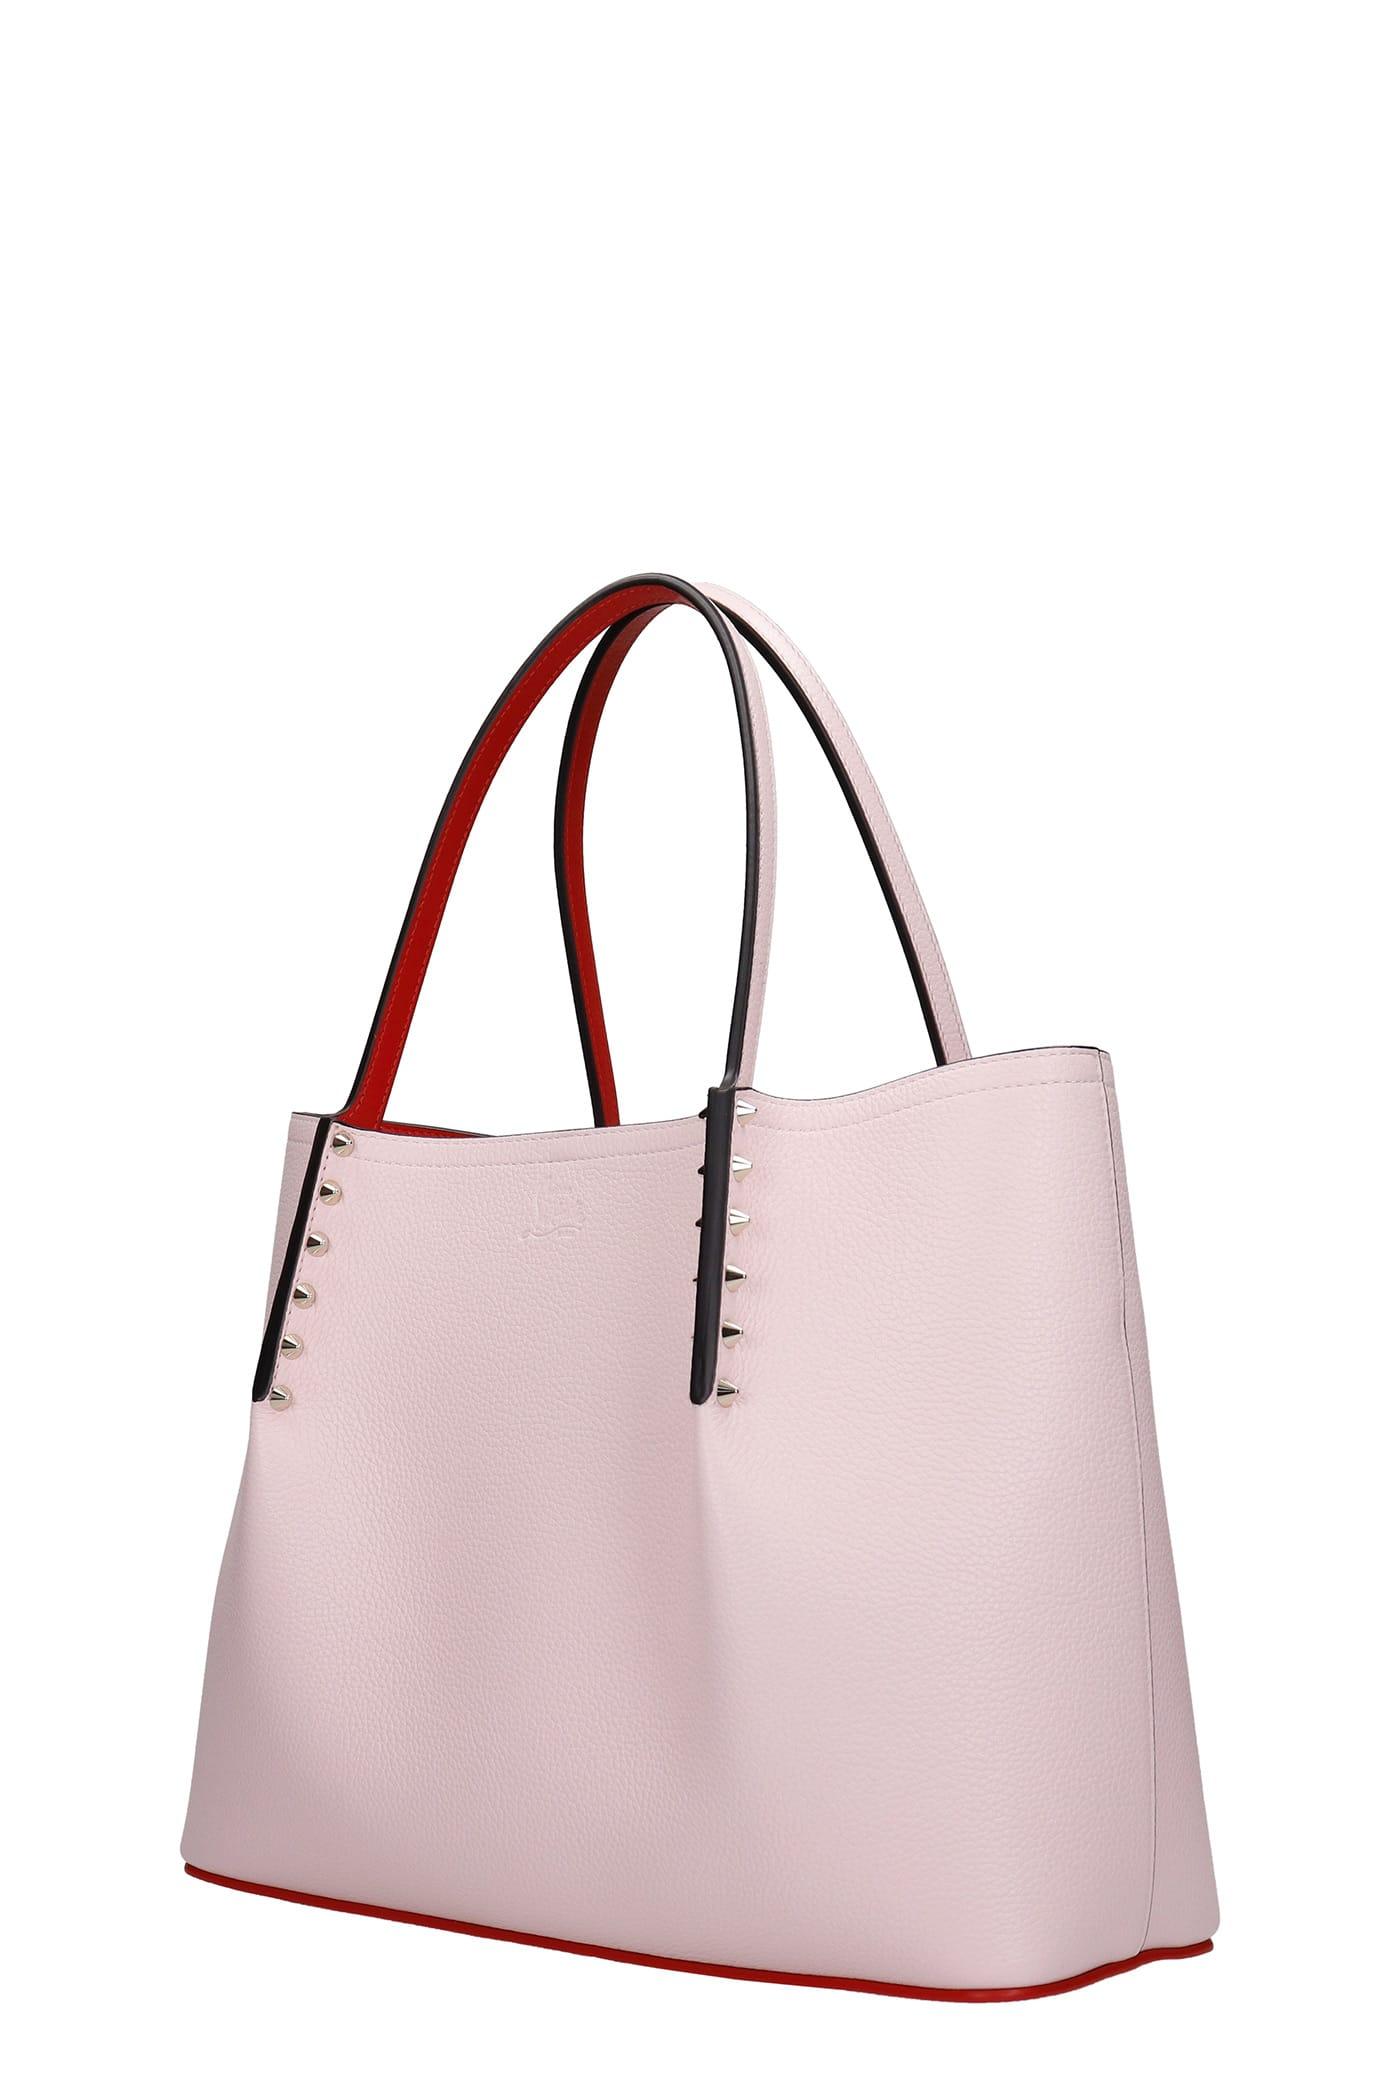 louboutin bag pink